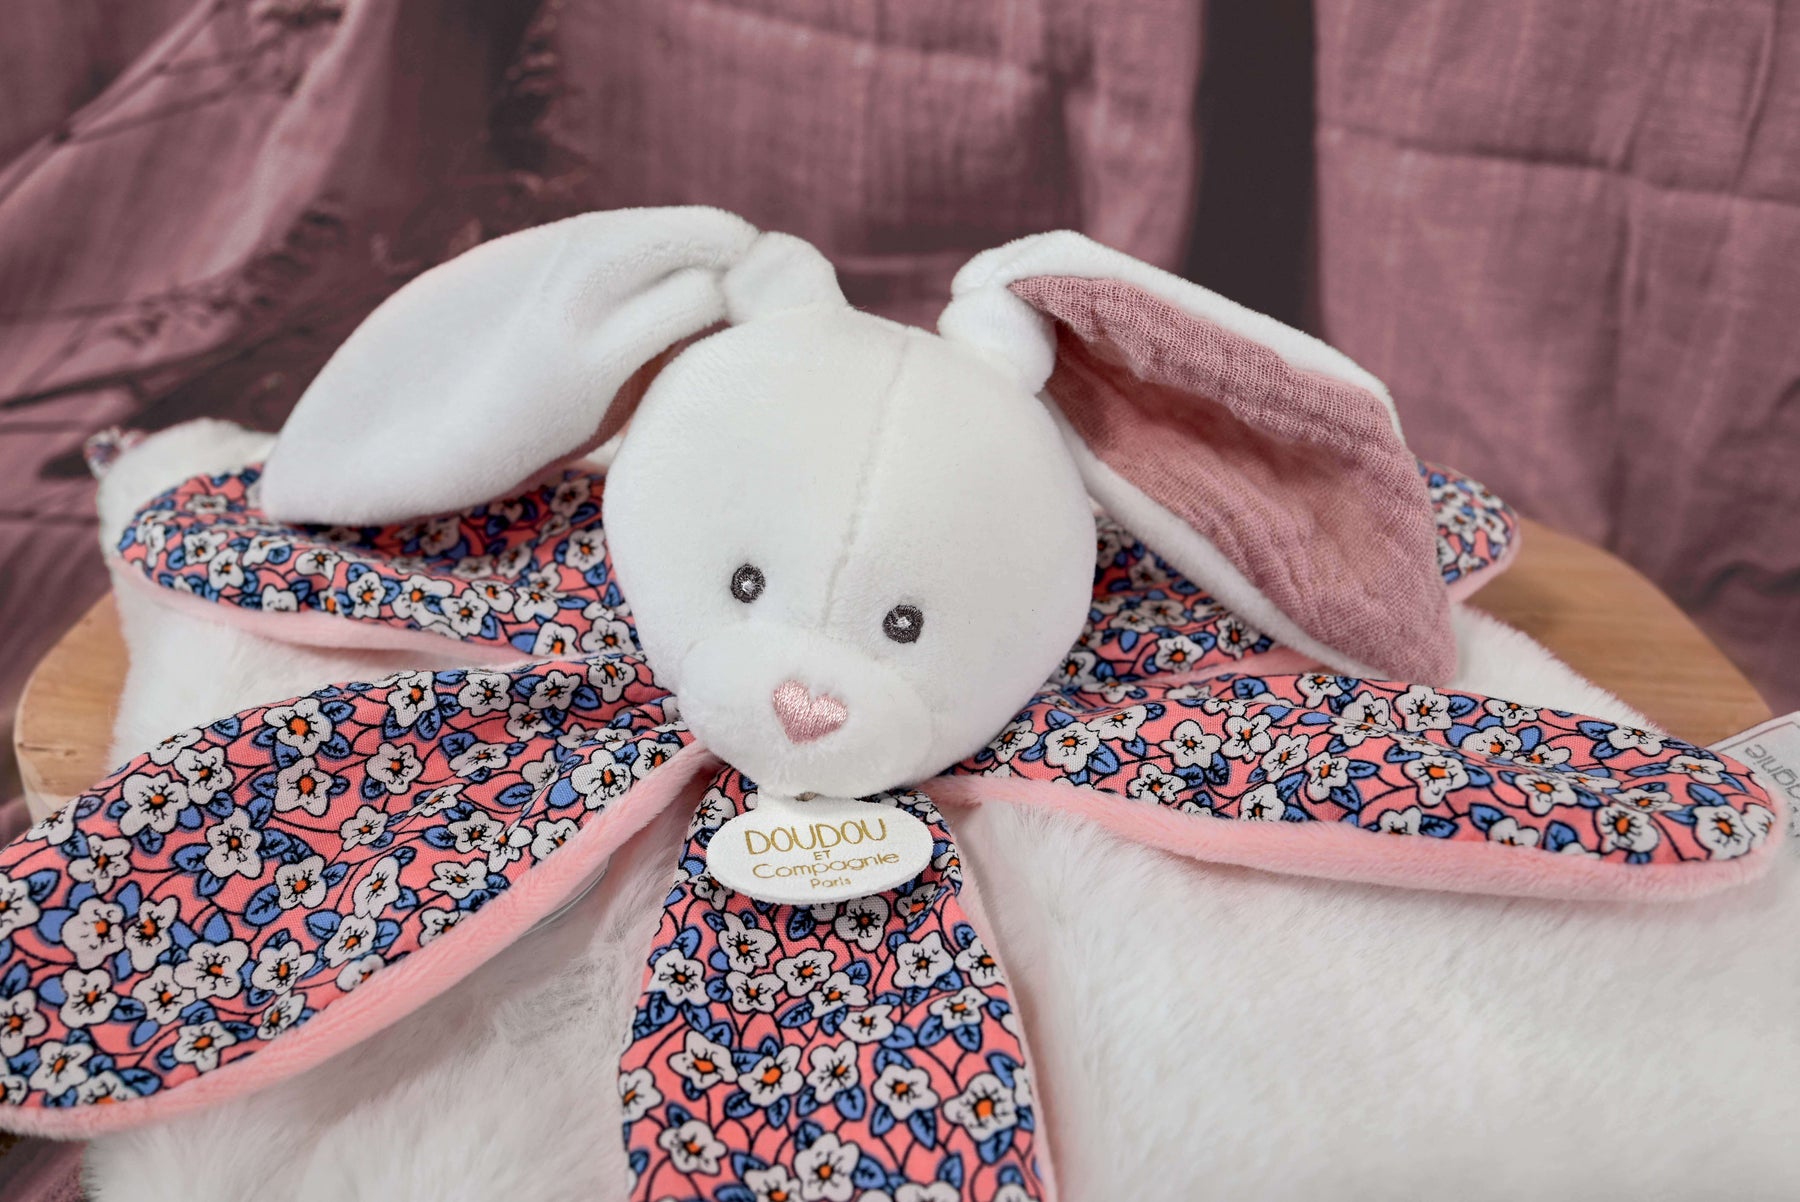 Jeux et Jouets - Doudou lapin blanc rose à 19,90 €TTC